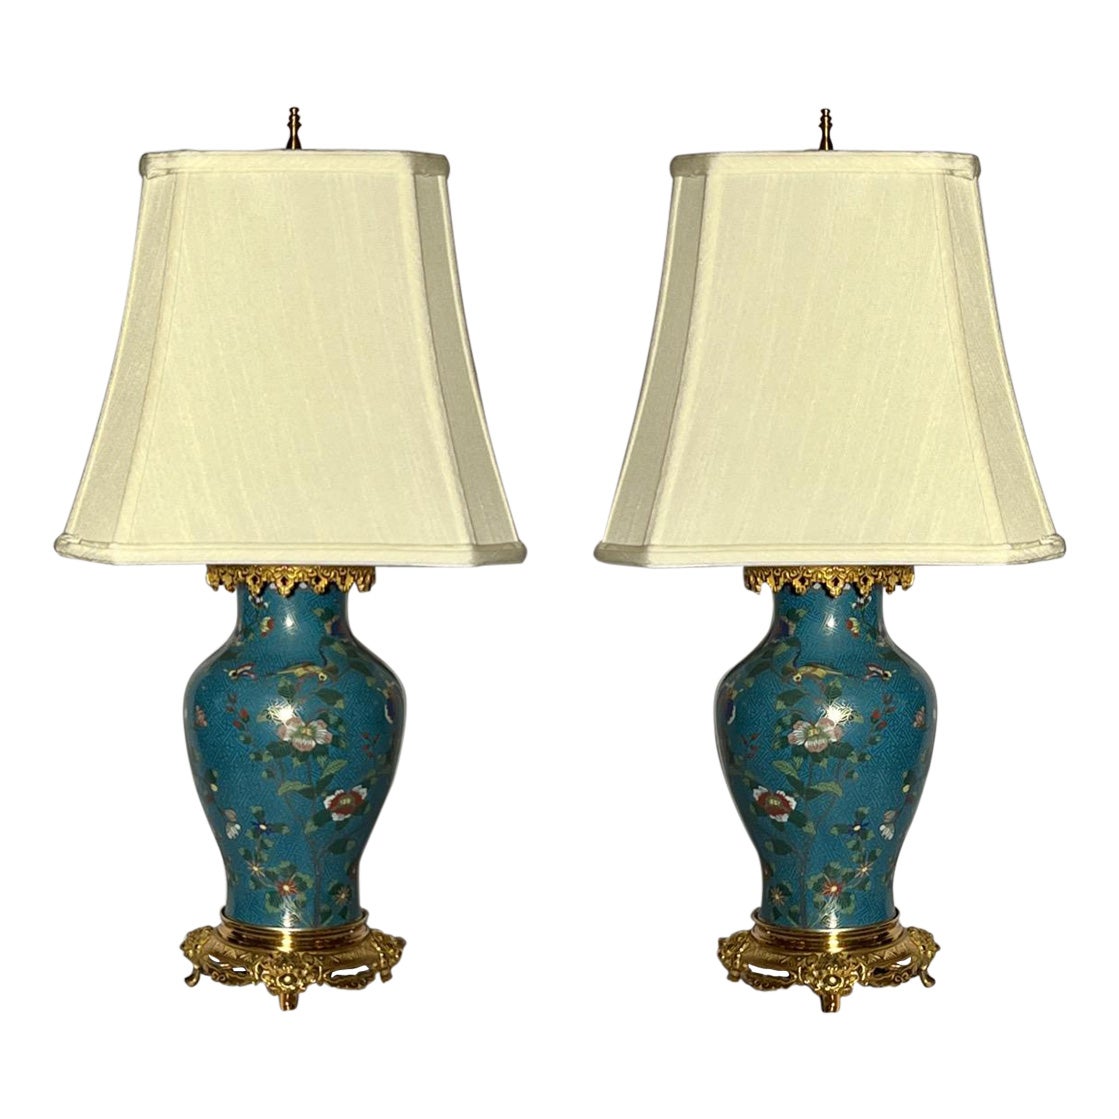 Paire de lampes anciennes en cloisonné d'origine française vers 1890